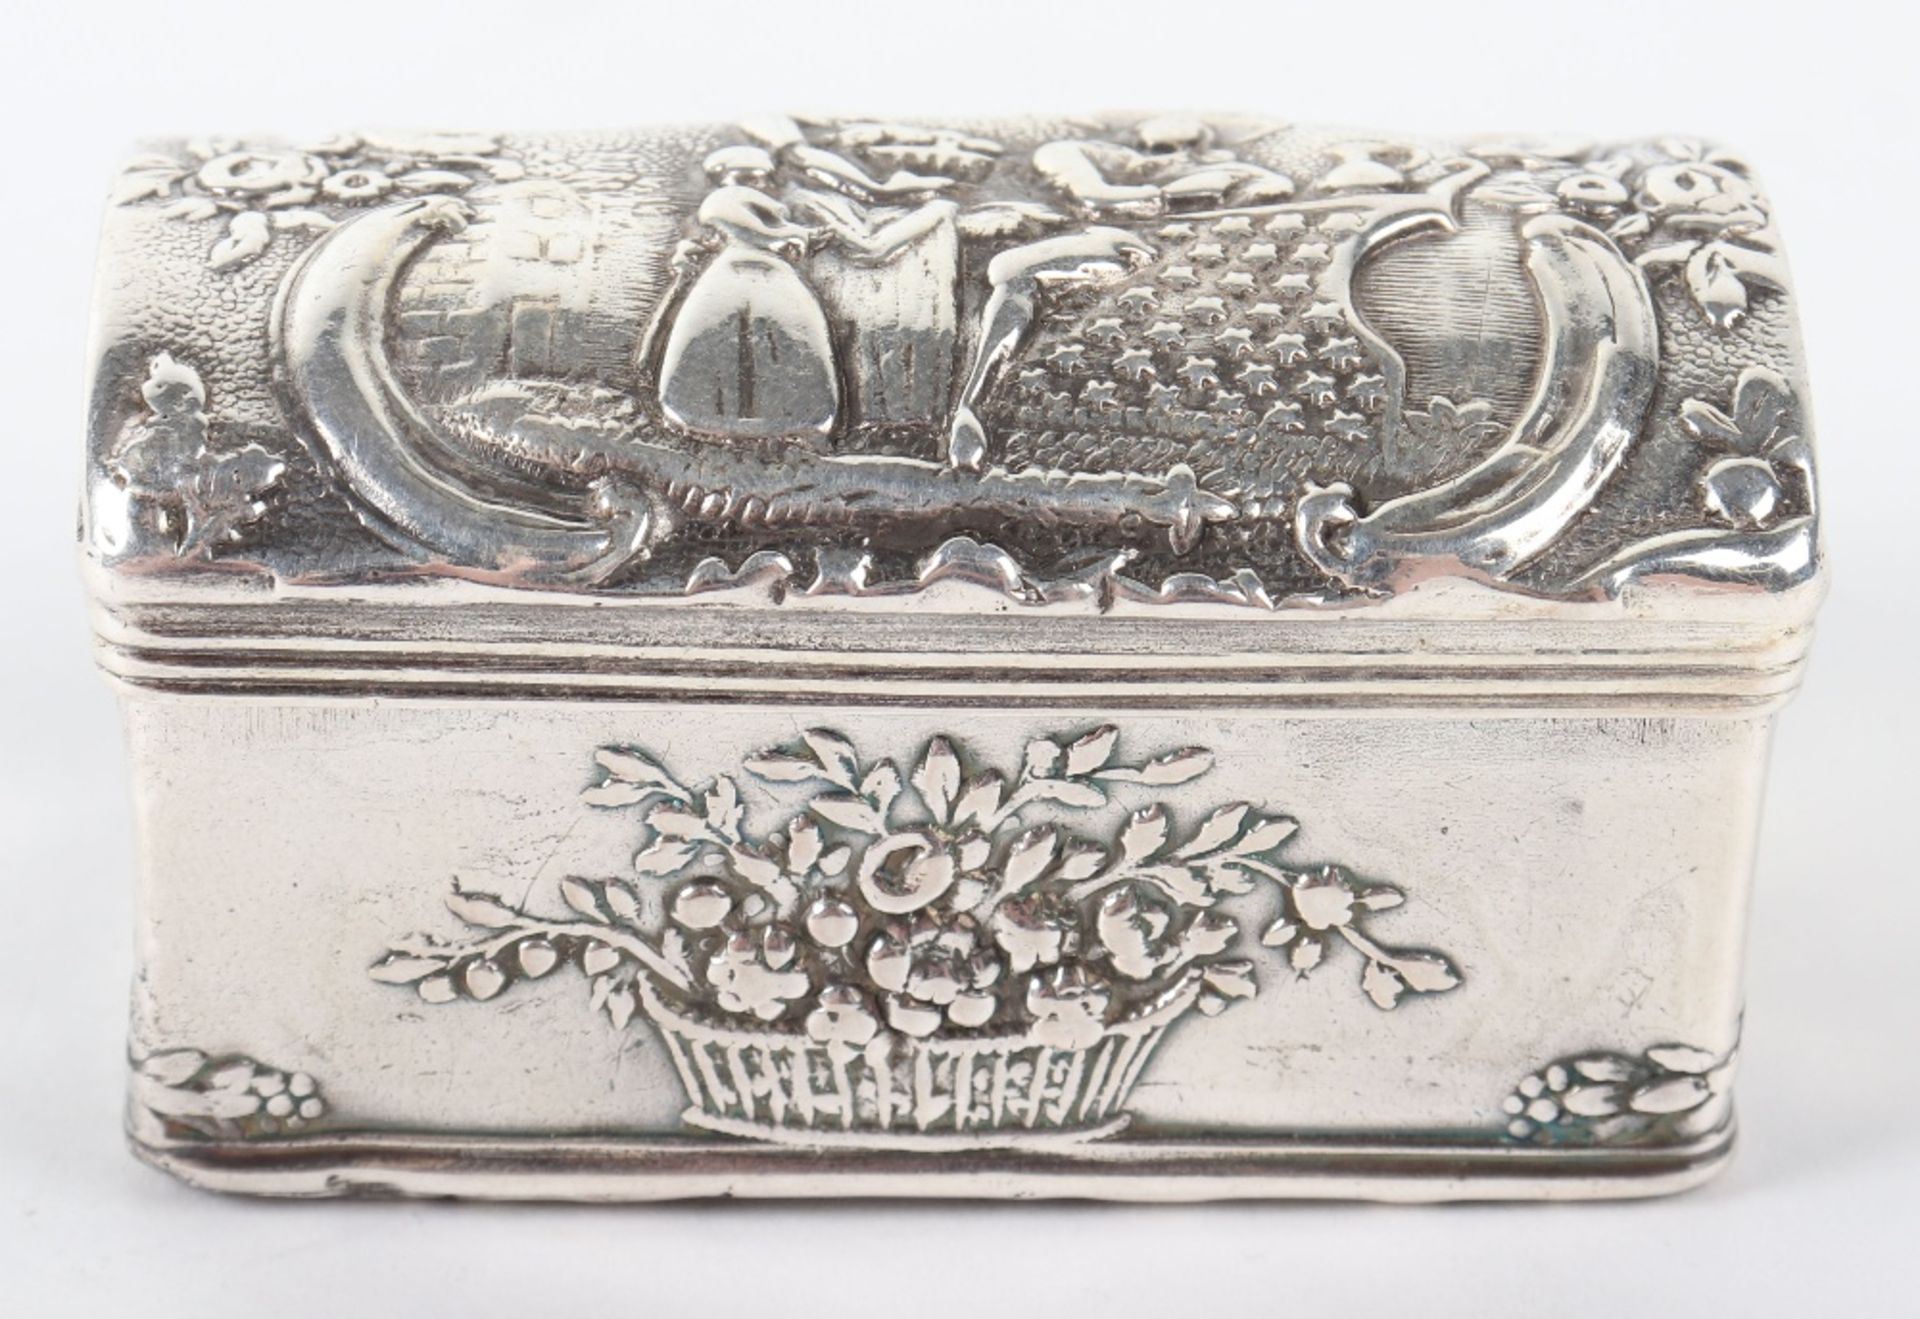 An 18th century Dutch silver box, Amsterdam,